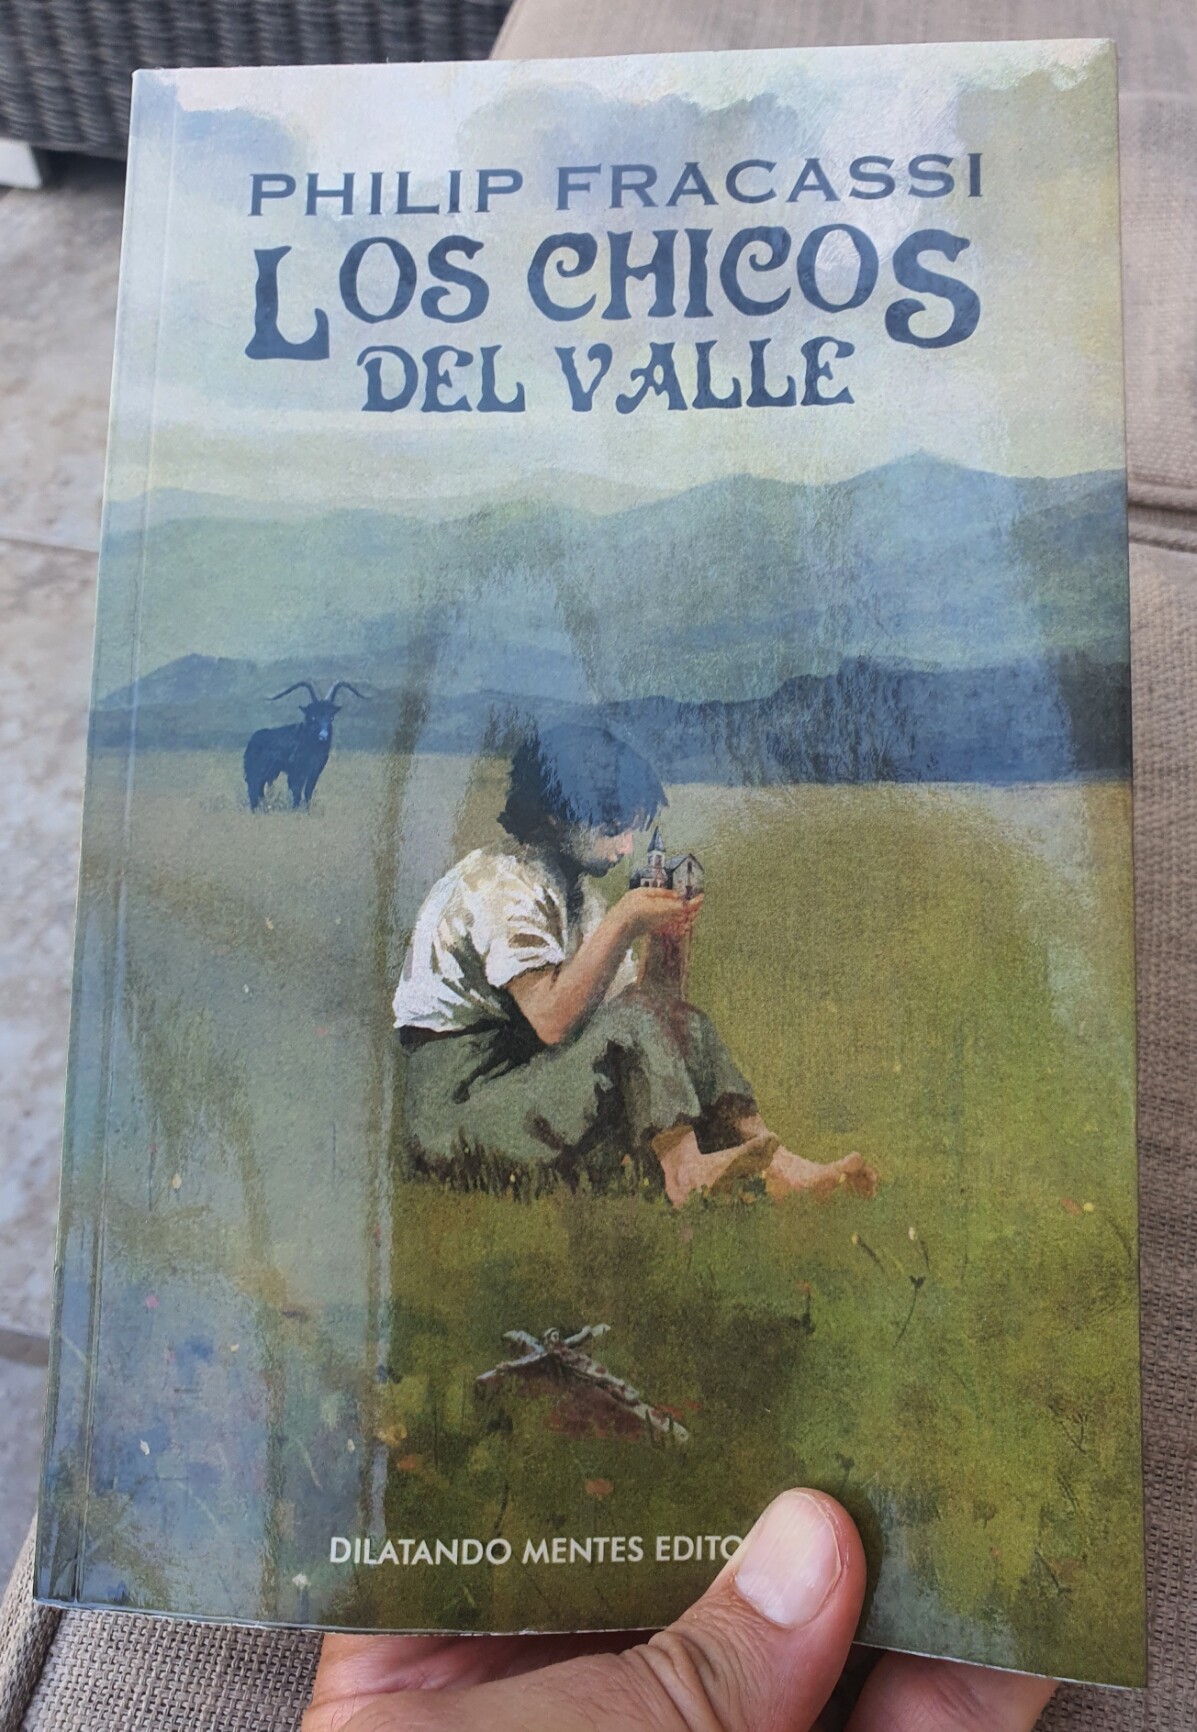 Mariano Hortal: Lectura 198 Los chicos del valle de Philip Fracas… -  Mastodon 🐘